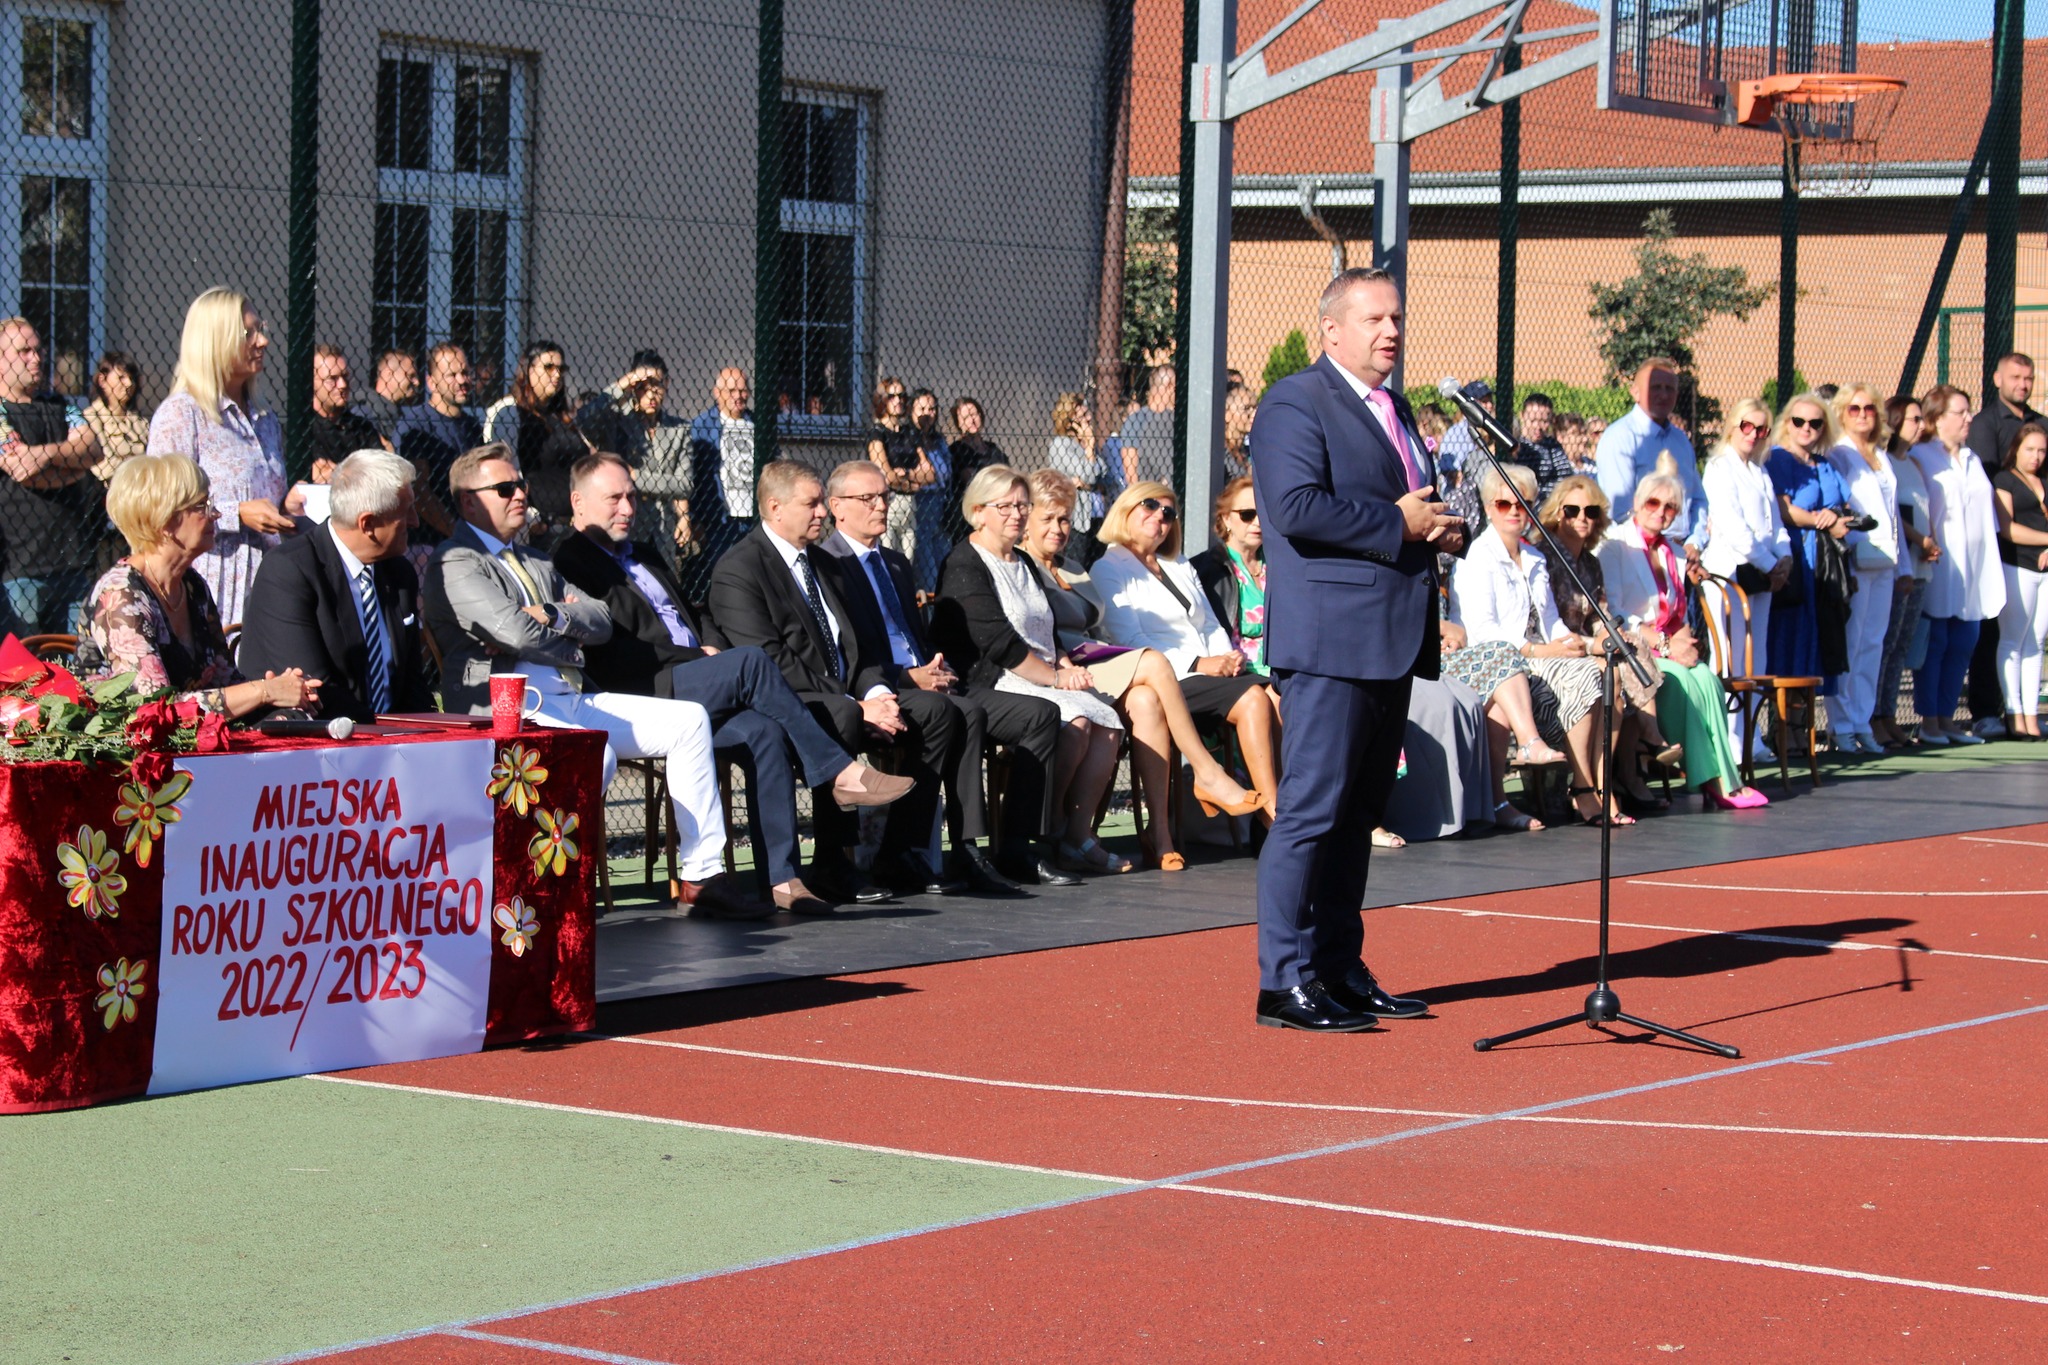 Burmistrz Koła Krzysztof Witkowski przemawia podczas miejskiej inauguracji roku szkolnego 2022/2023